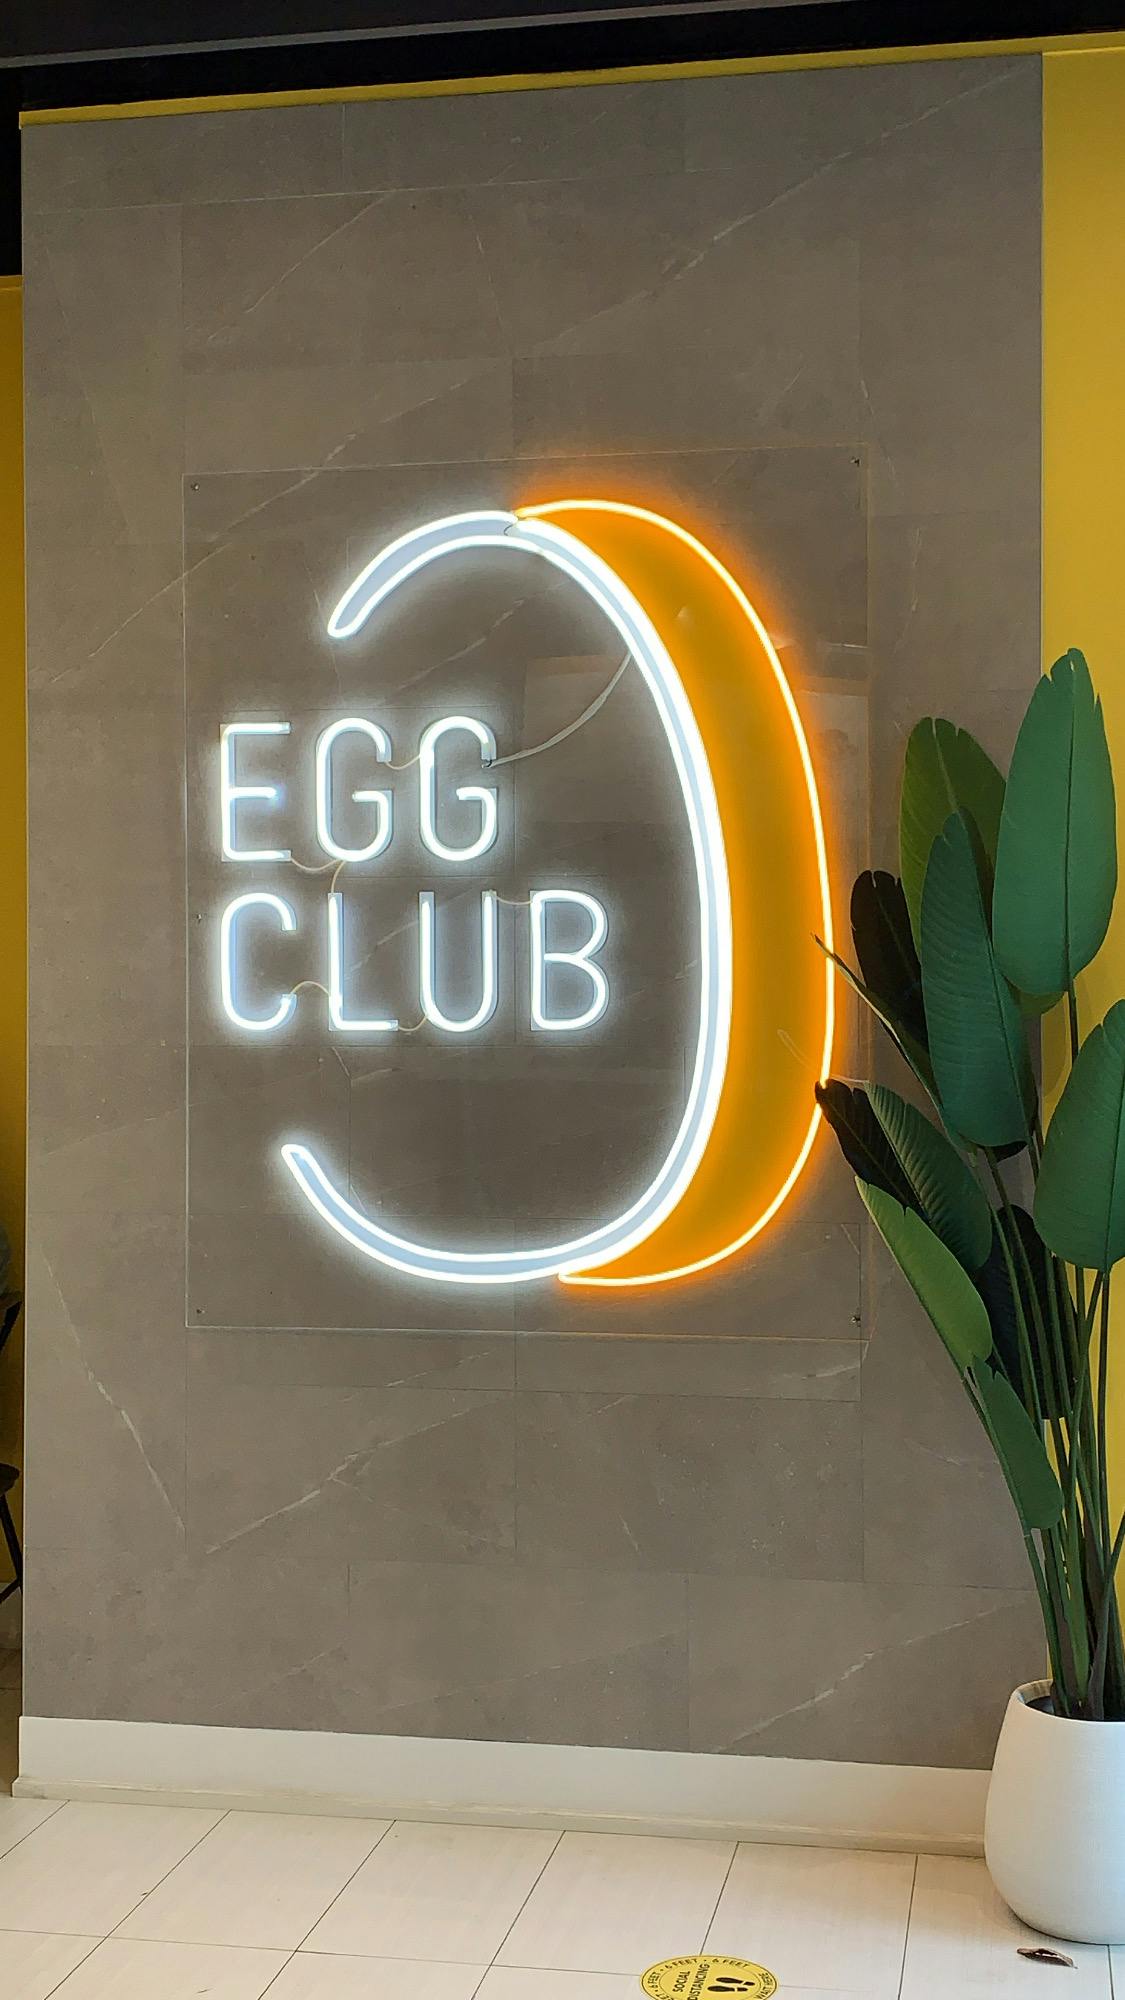 Egg Club